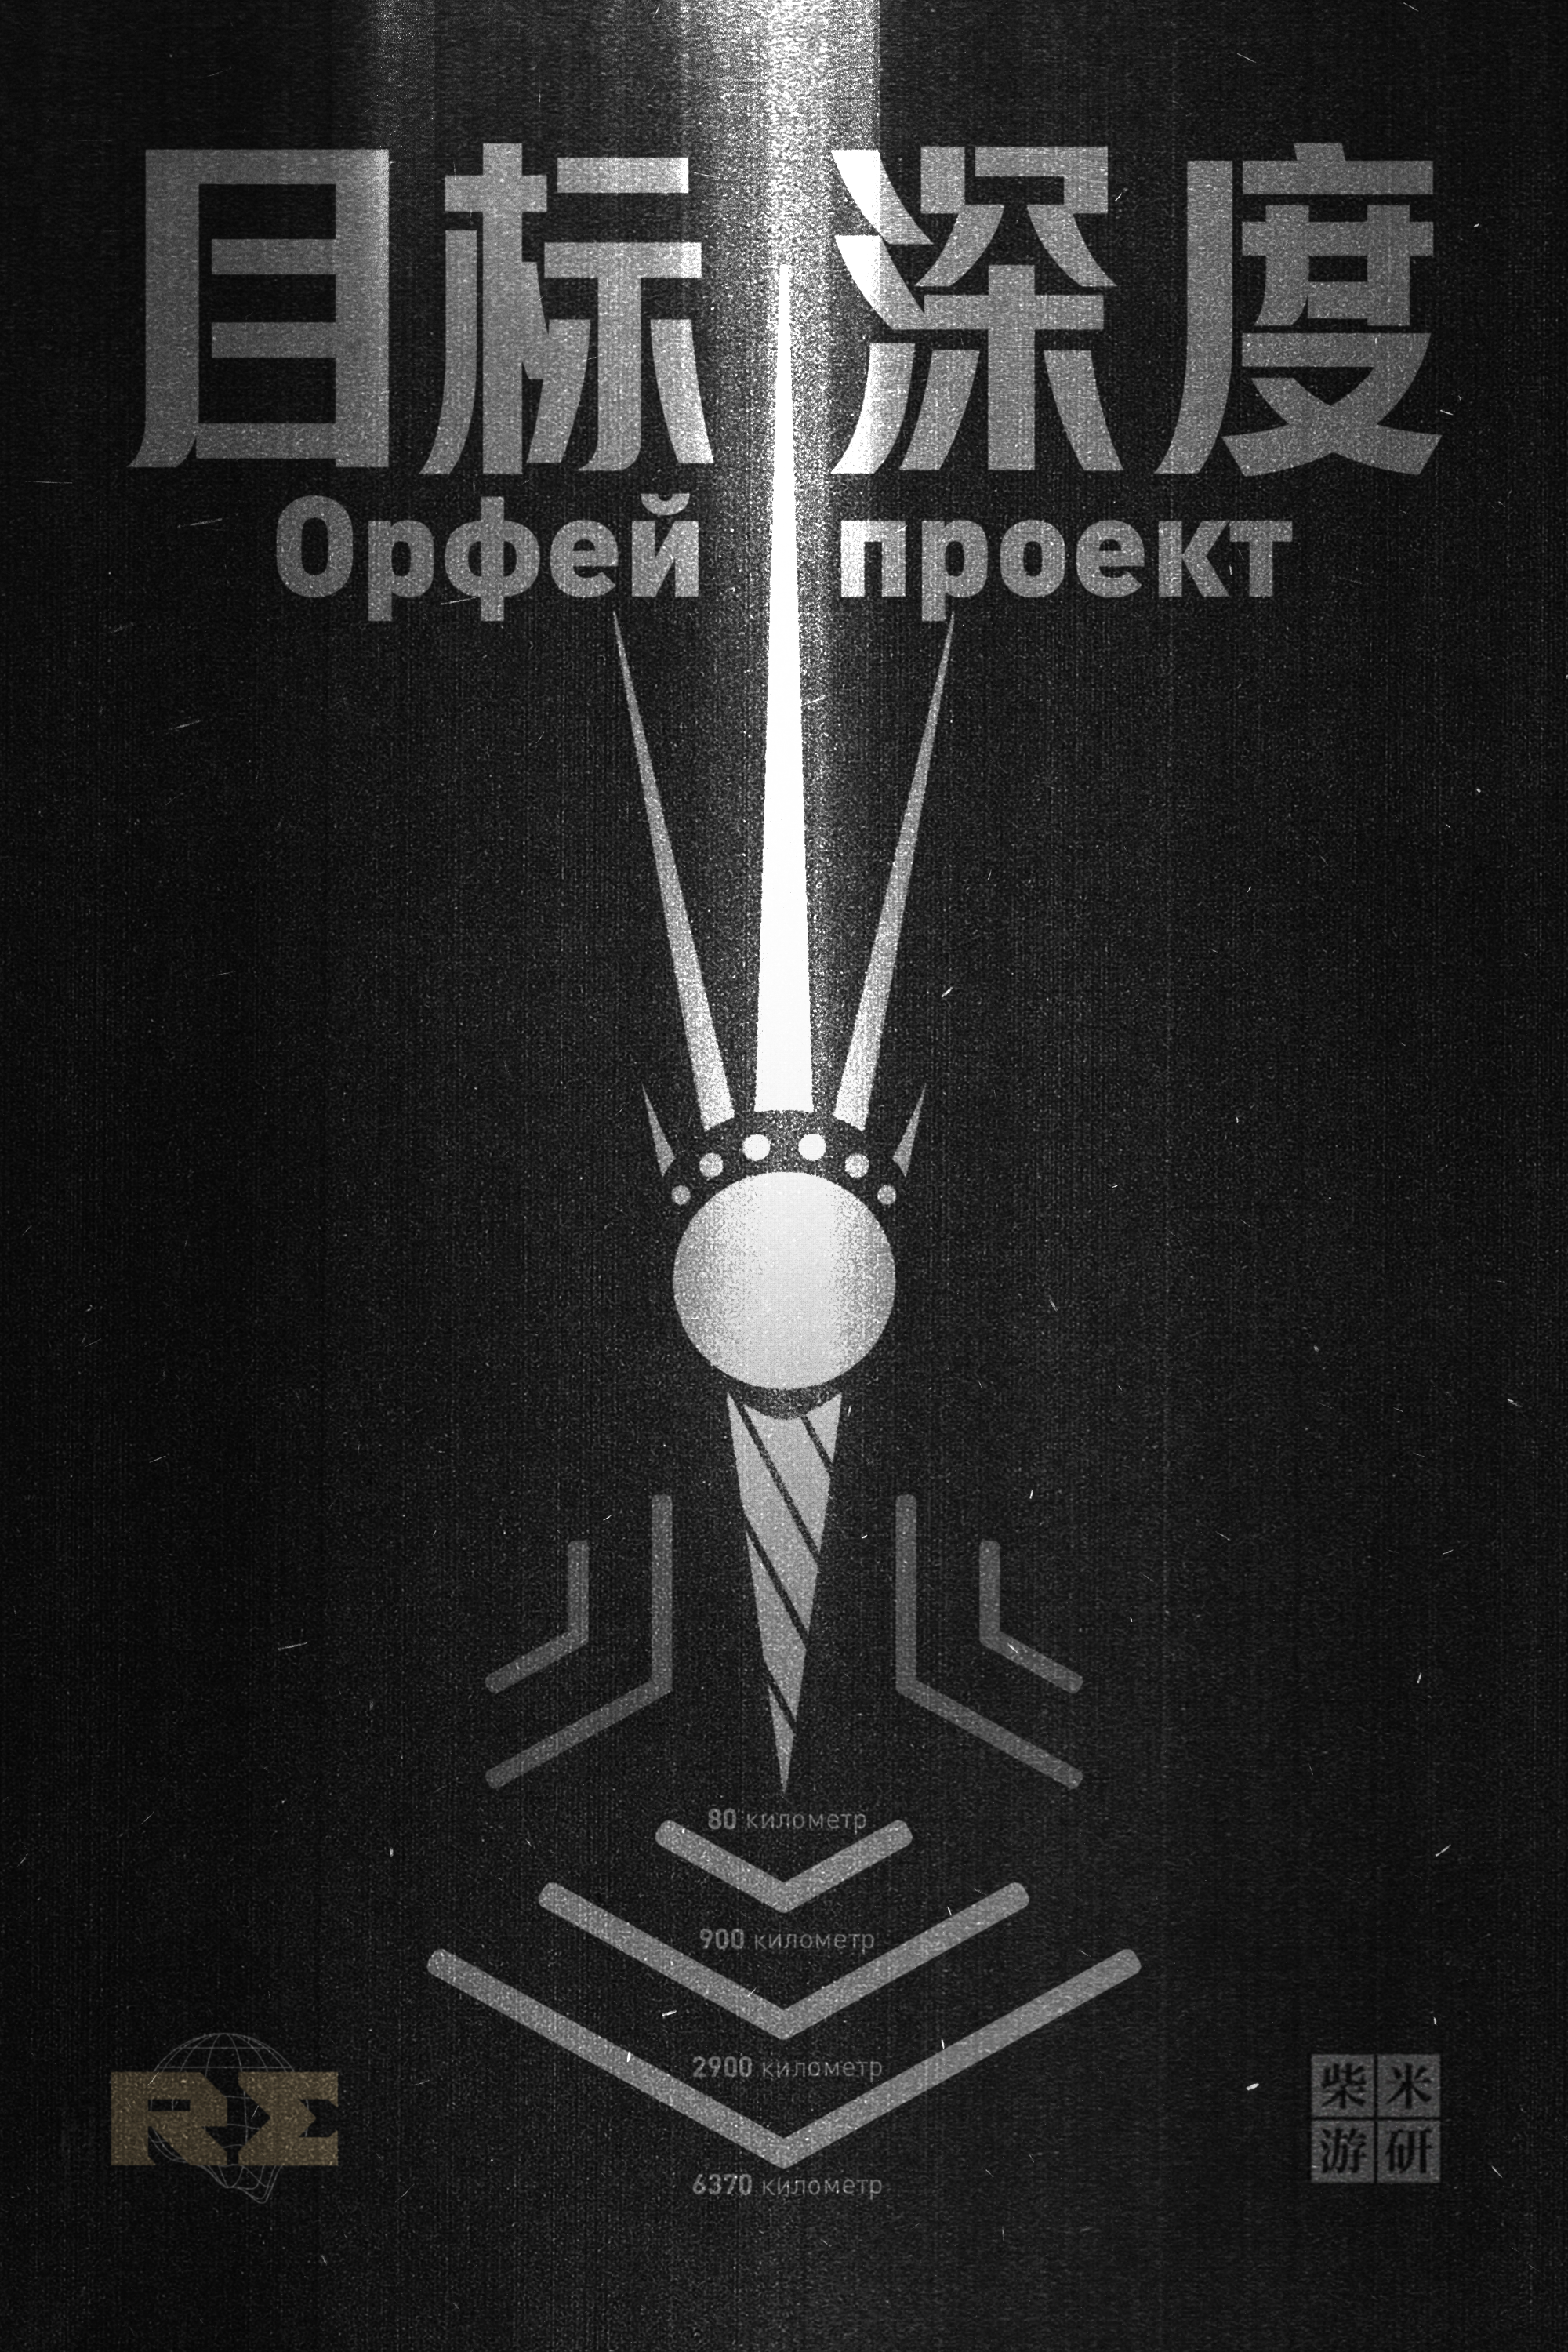 游戏中，苏联在表面的科拉深孔计划外的隐藏计划《俄尔普斯计划》图为计划logo的平面设计